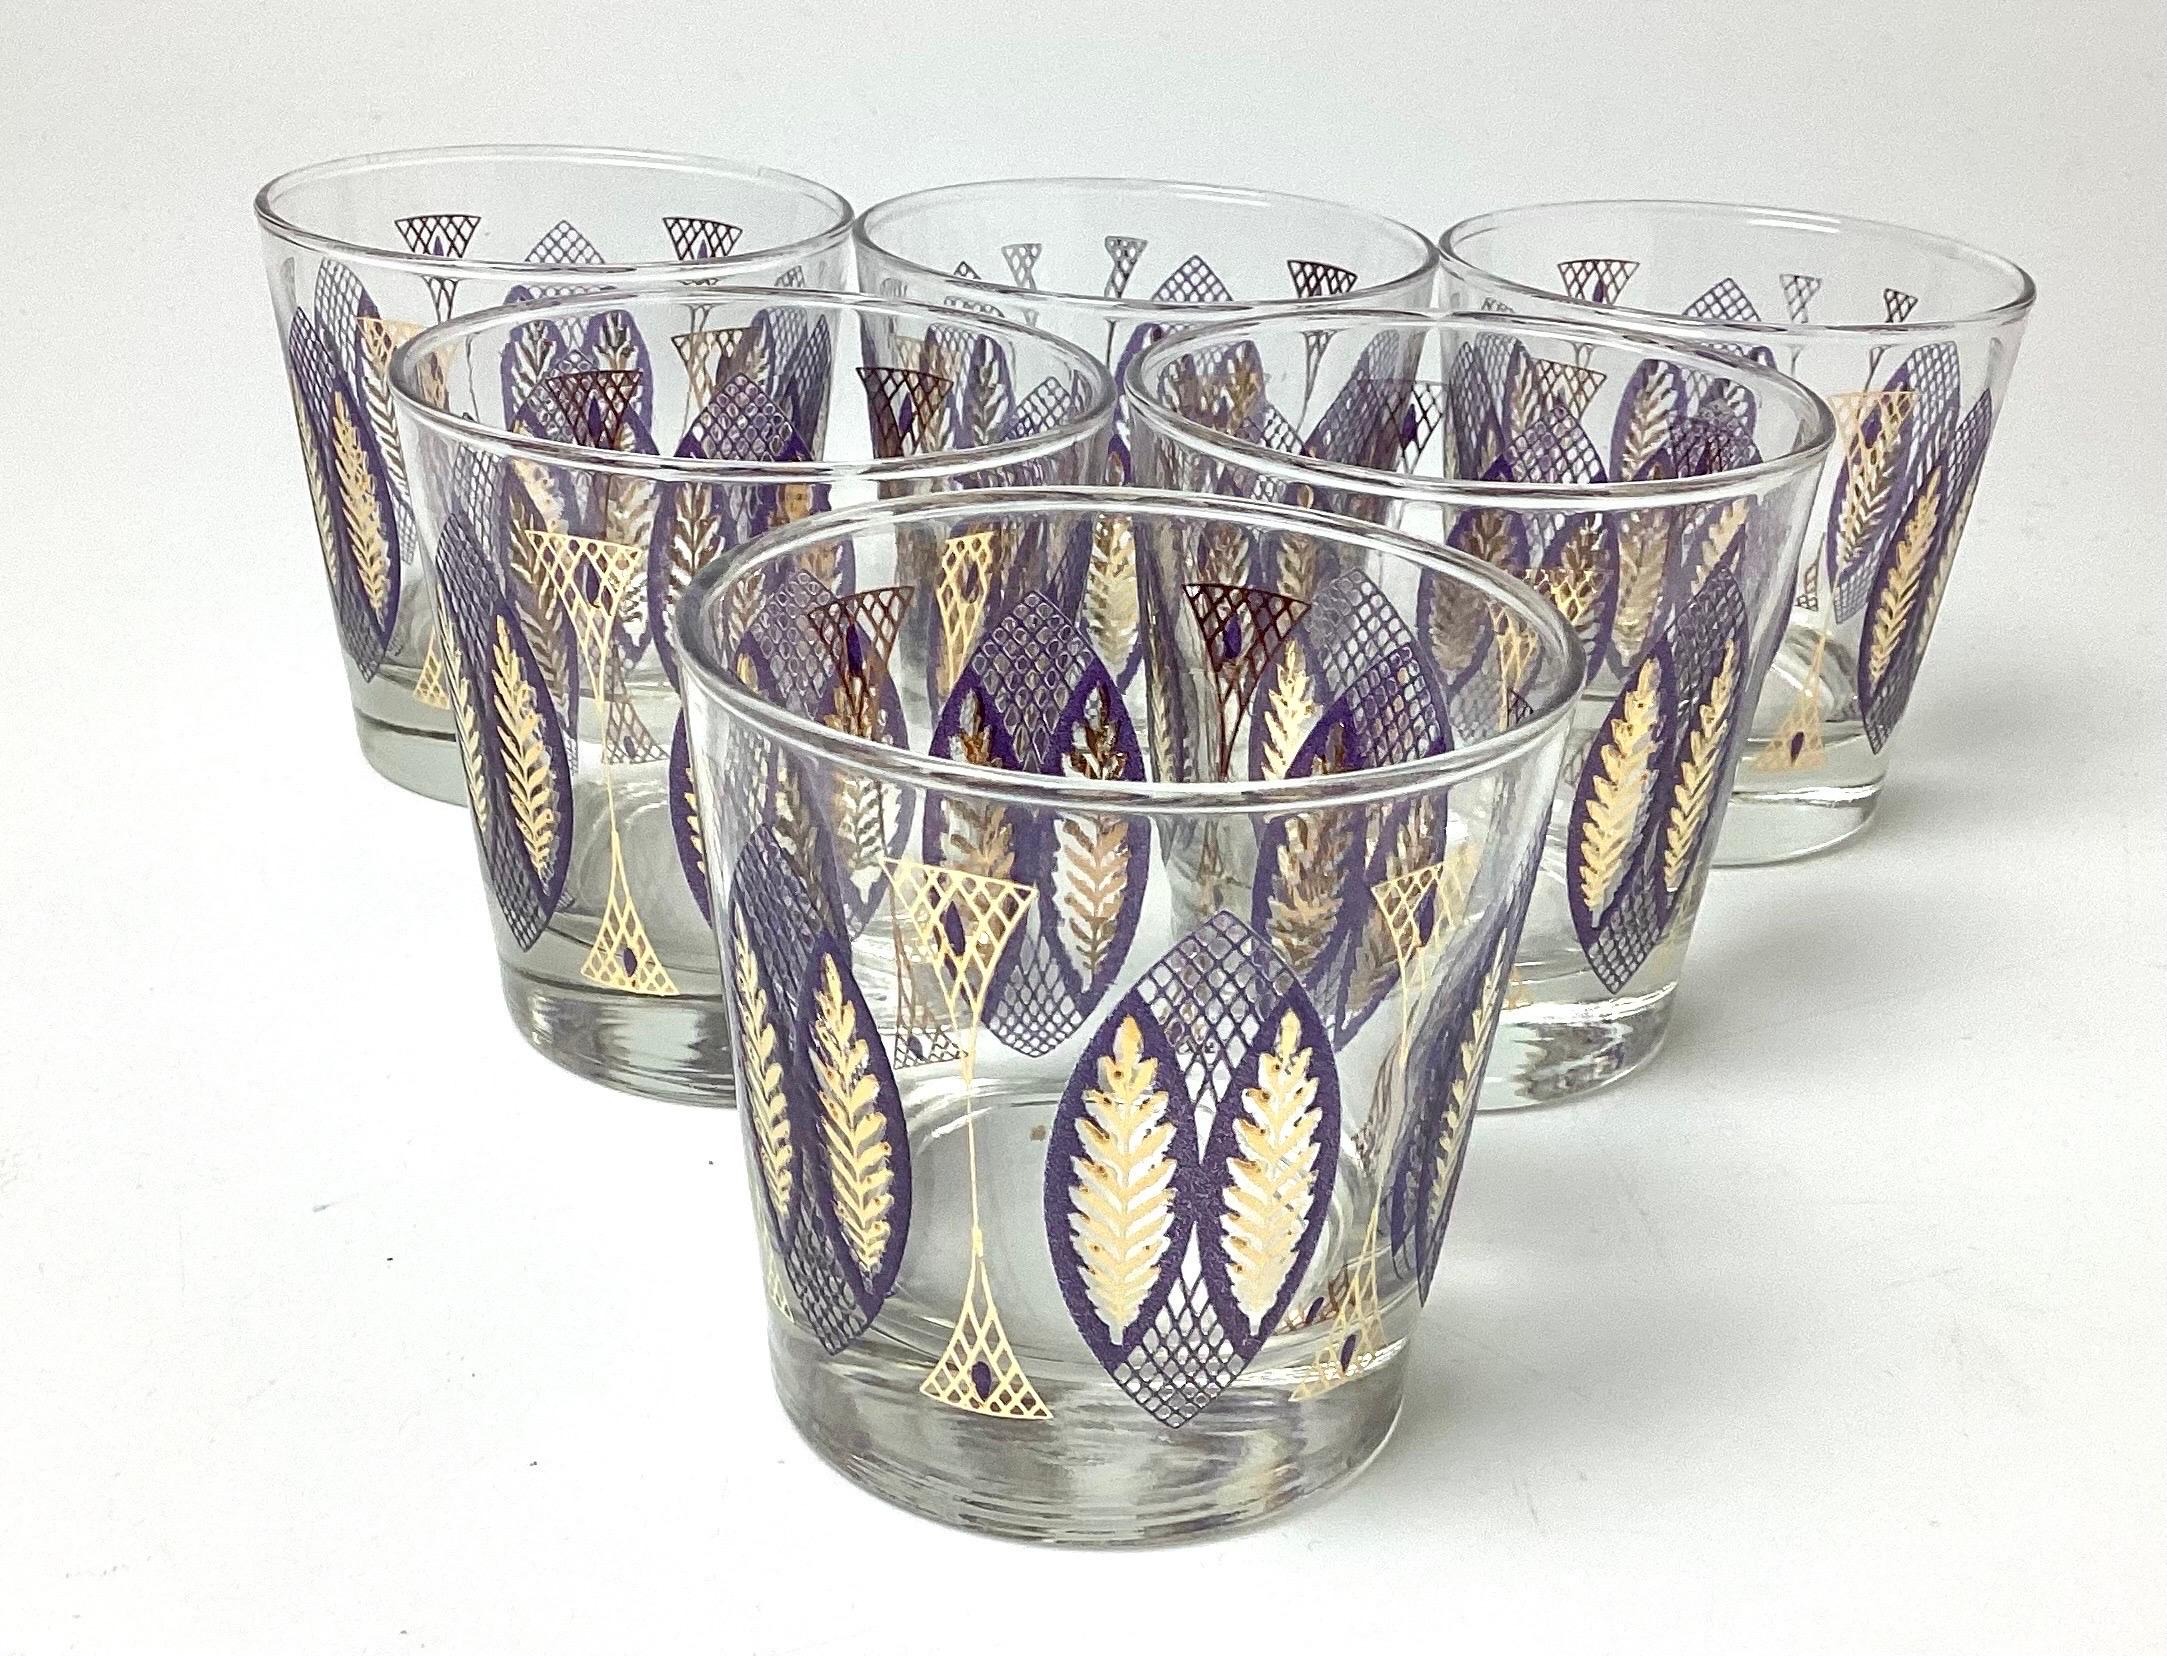 Ensemble de 6 verres de roche du milieu du siècle, violet et or, par Libbey. Glass Co. Une taille agréable pour un verre en fin d'après-midi. 3 1/4